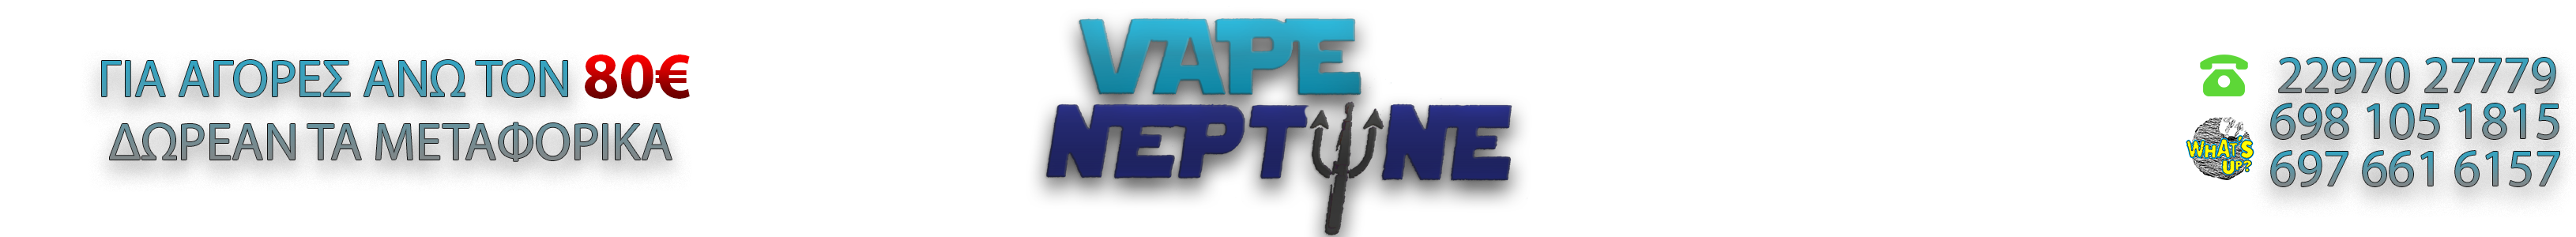 Vape Neptune